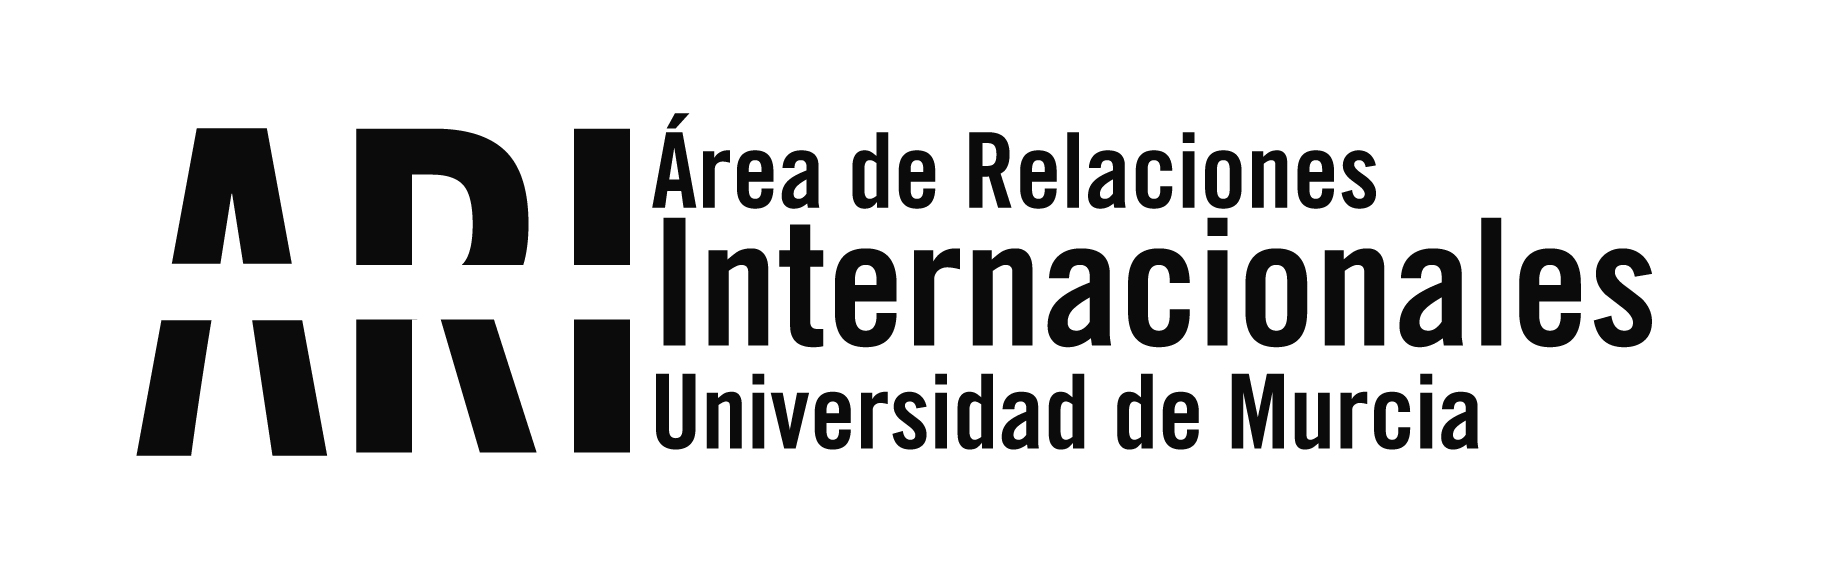 Santander Ingenio - Área de Relaciones Internacionales